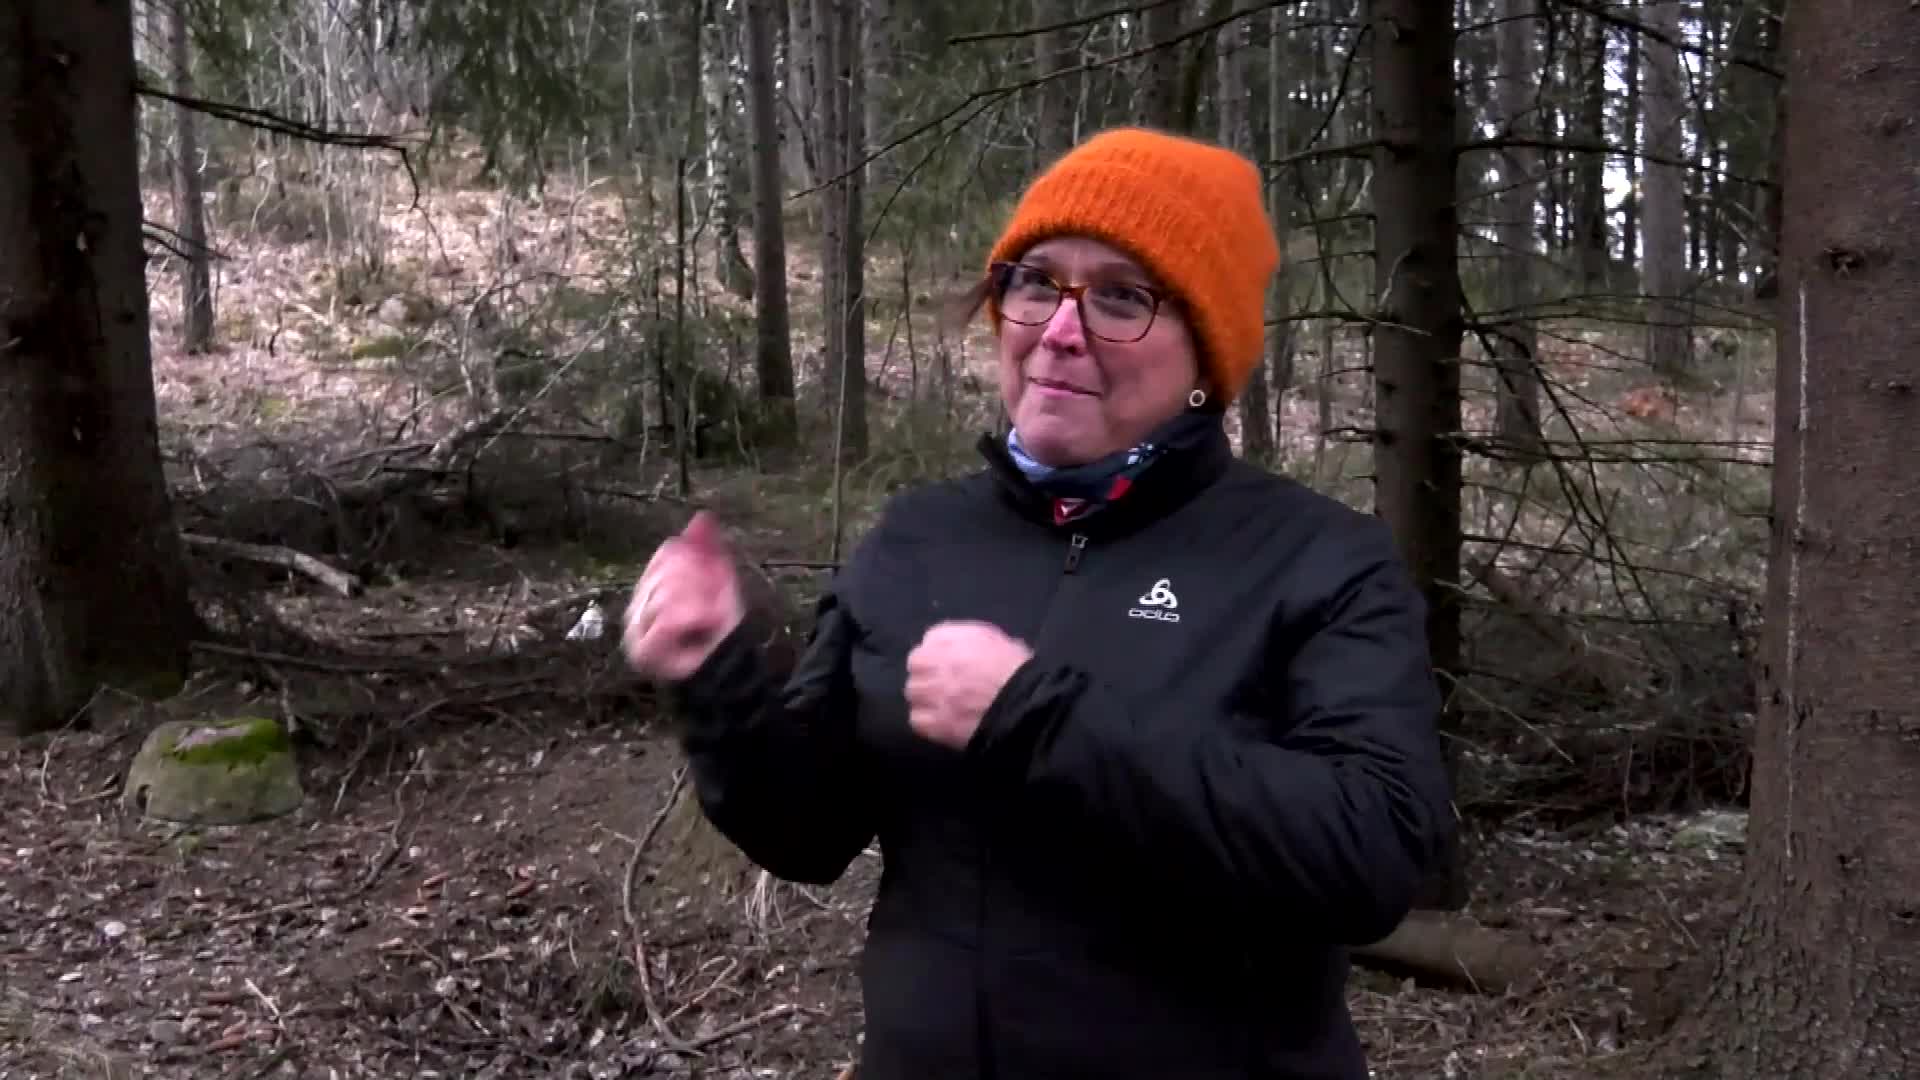 Klik for at se videoen "Mit nye liv i Norge - Lone Abild Gerhardt"